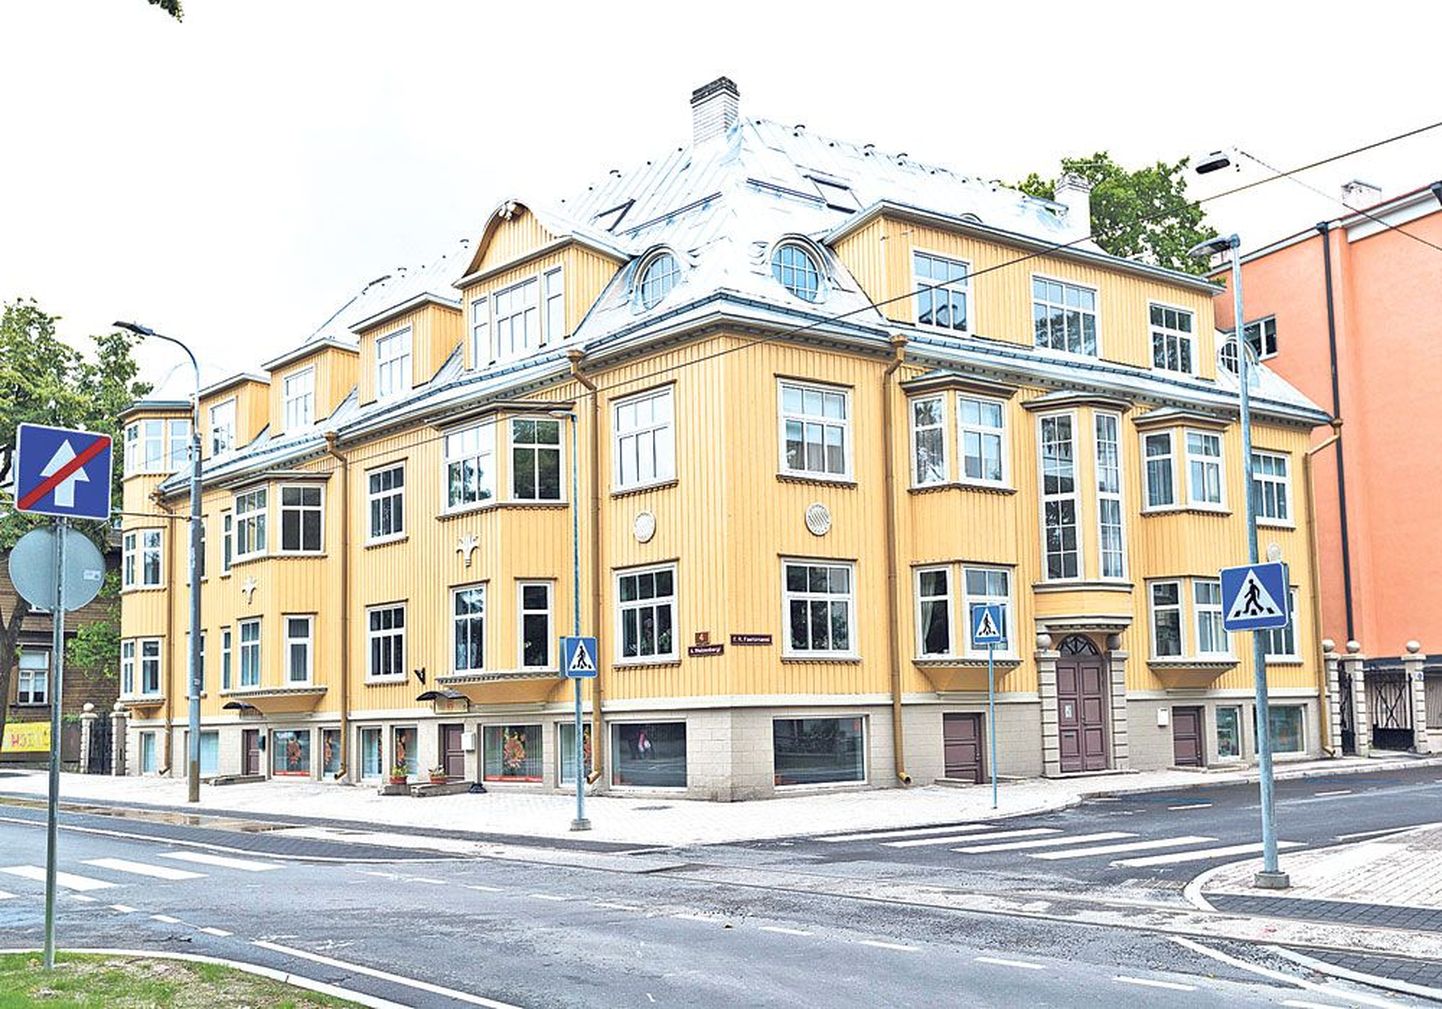 Члену Рийгикогу Керсти Сарапуу и ее мужу, столичному вице-мэру Арво Сарапуу, принадлежит квартира на улице Вейценберги в Таллинне, но она снимает жилье на улице Татари.